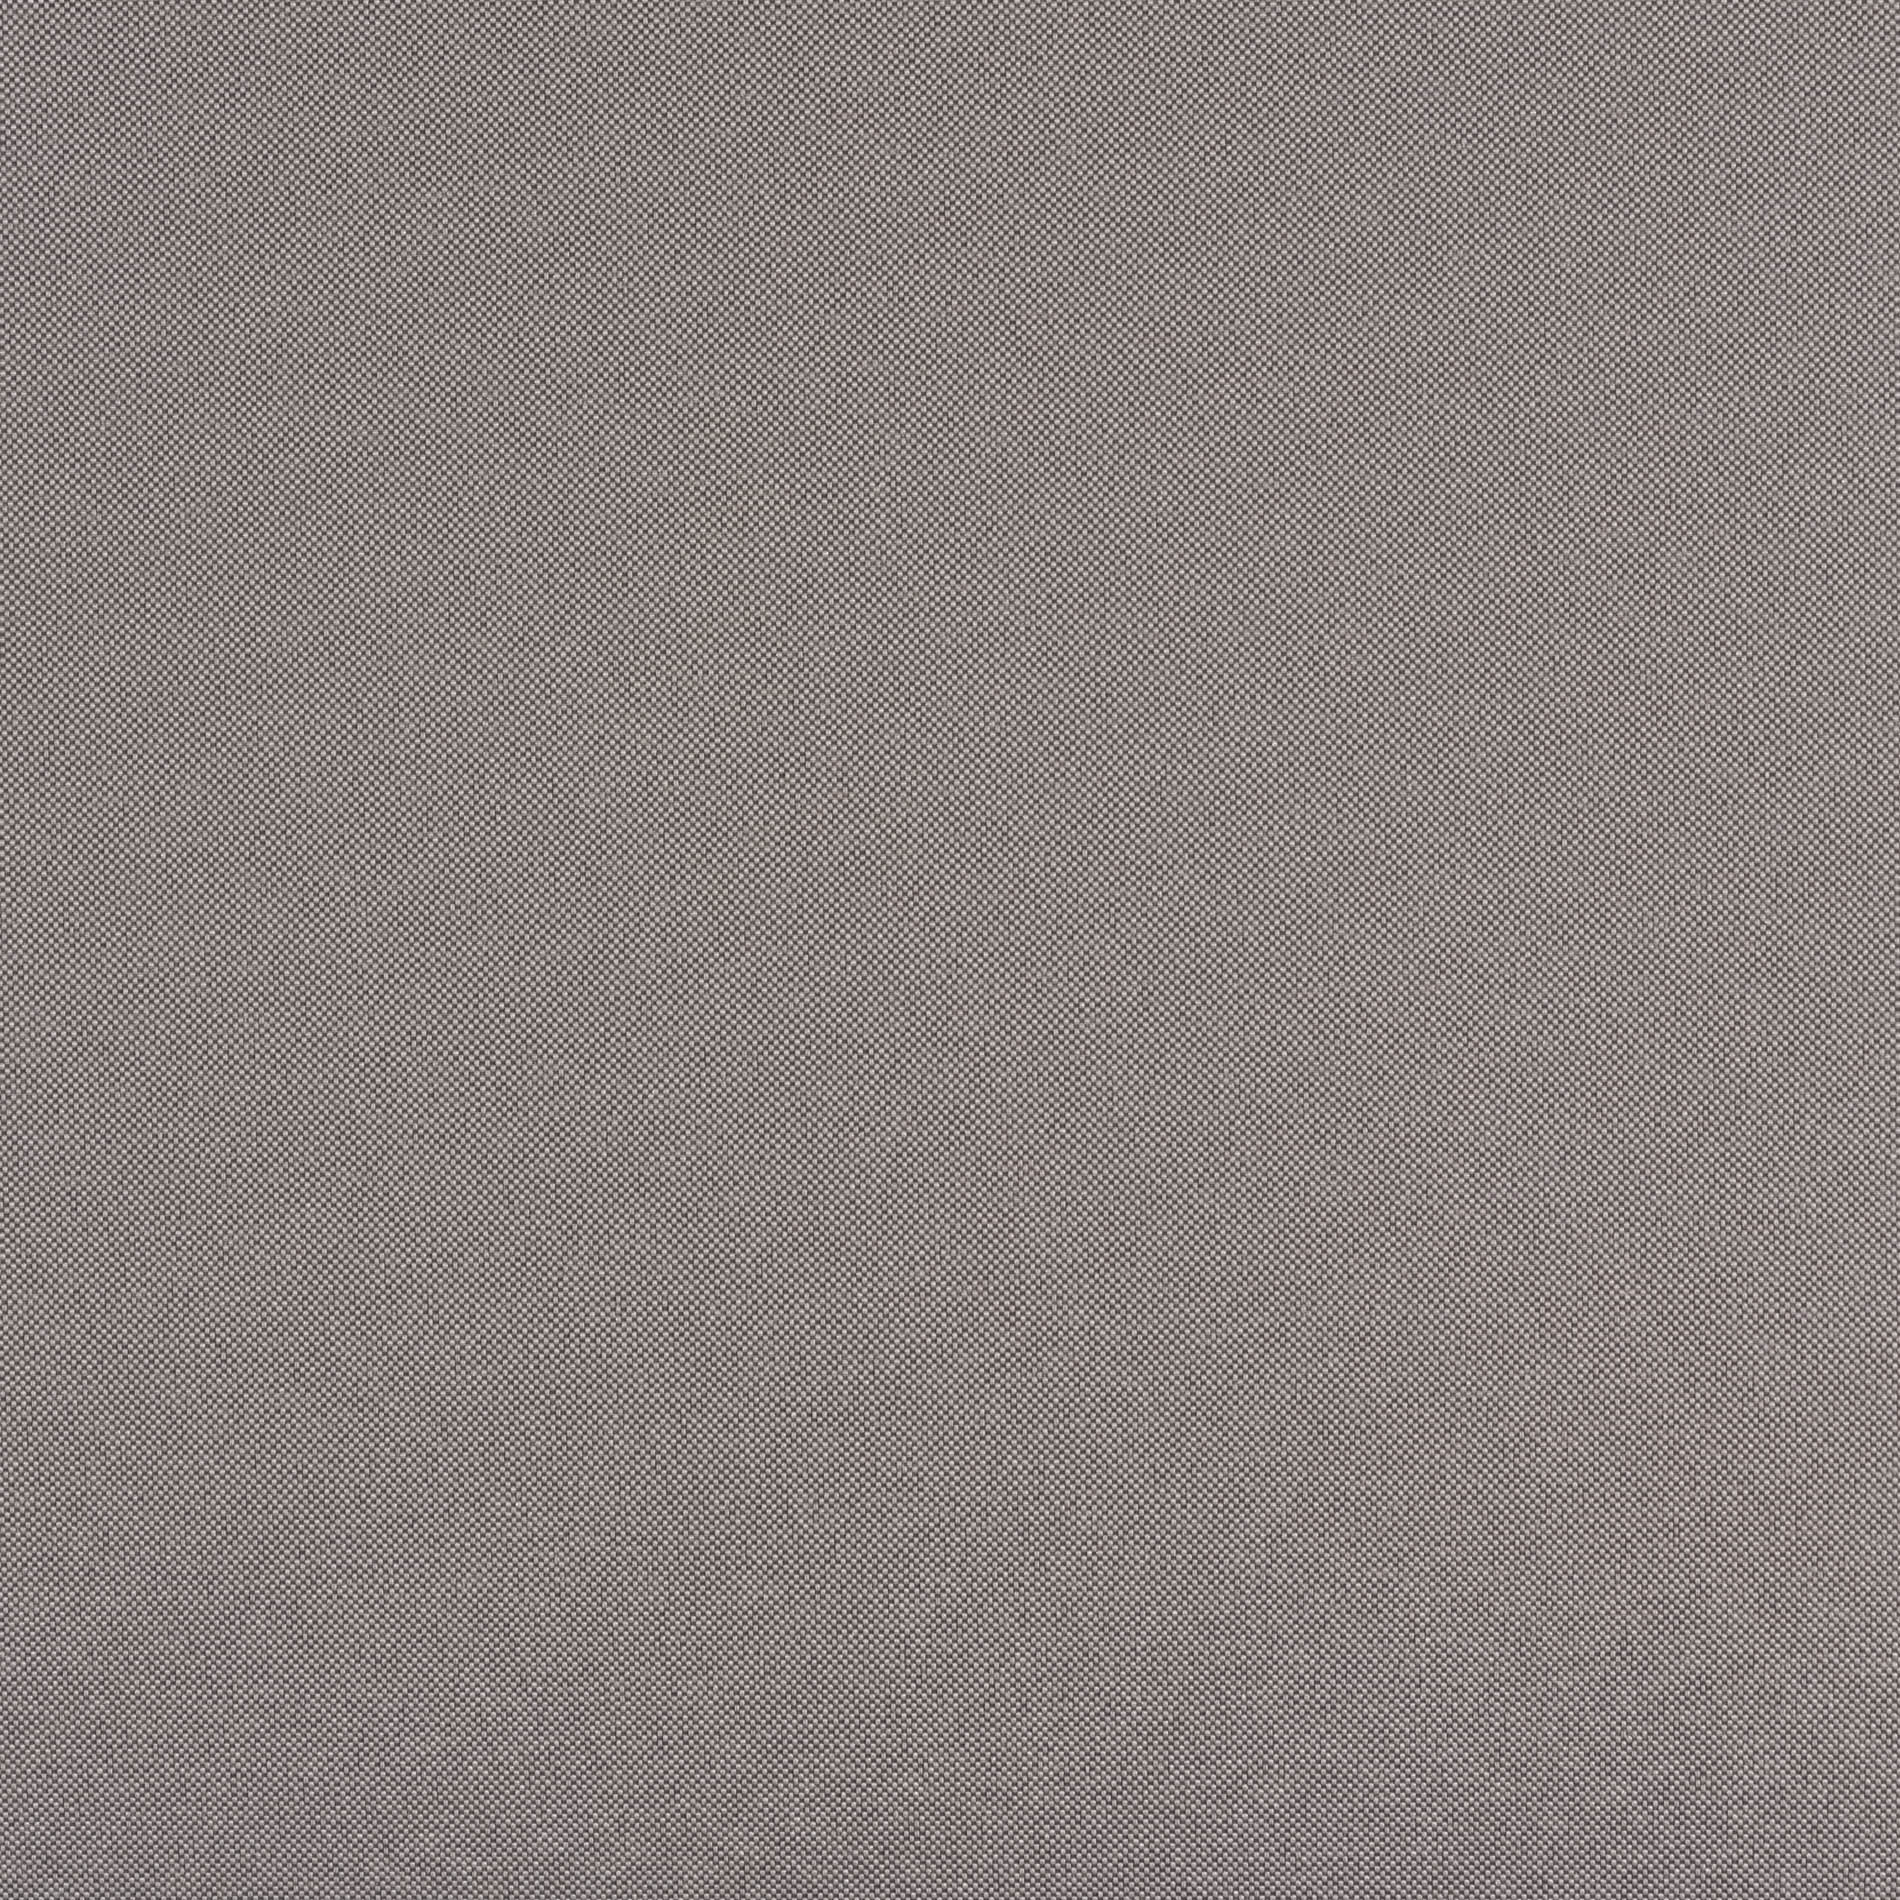 Altex - Fabric - GLOBE - Stormy Grey/White - 1657